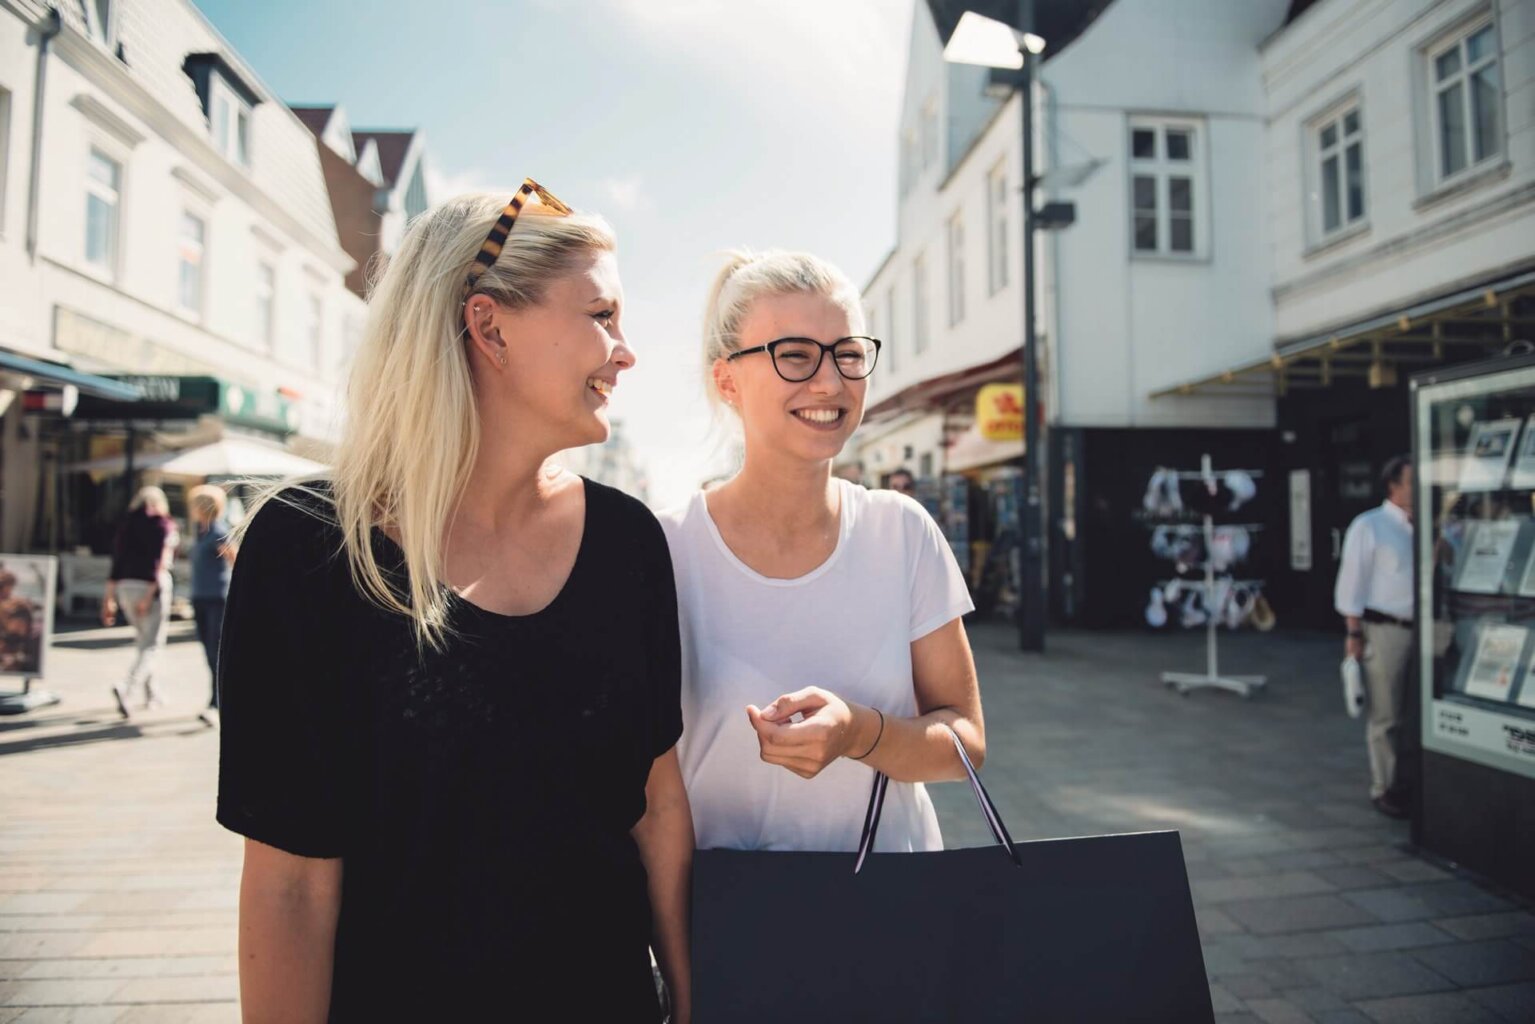 Kurzurlaub auf Sylt - Zwei Frauen gehen shoppen in der Einkaufsstraße von Westerland. Die Sonne scheint und die beiden lachen zusammen.